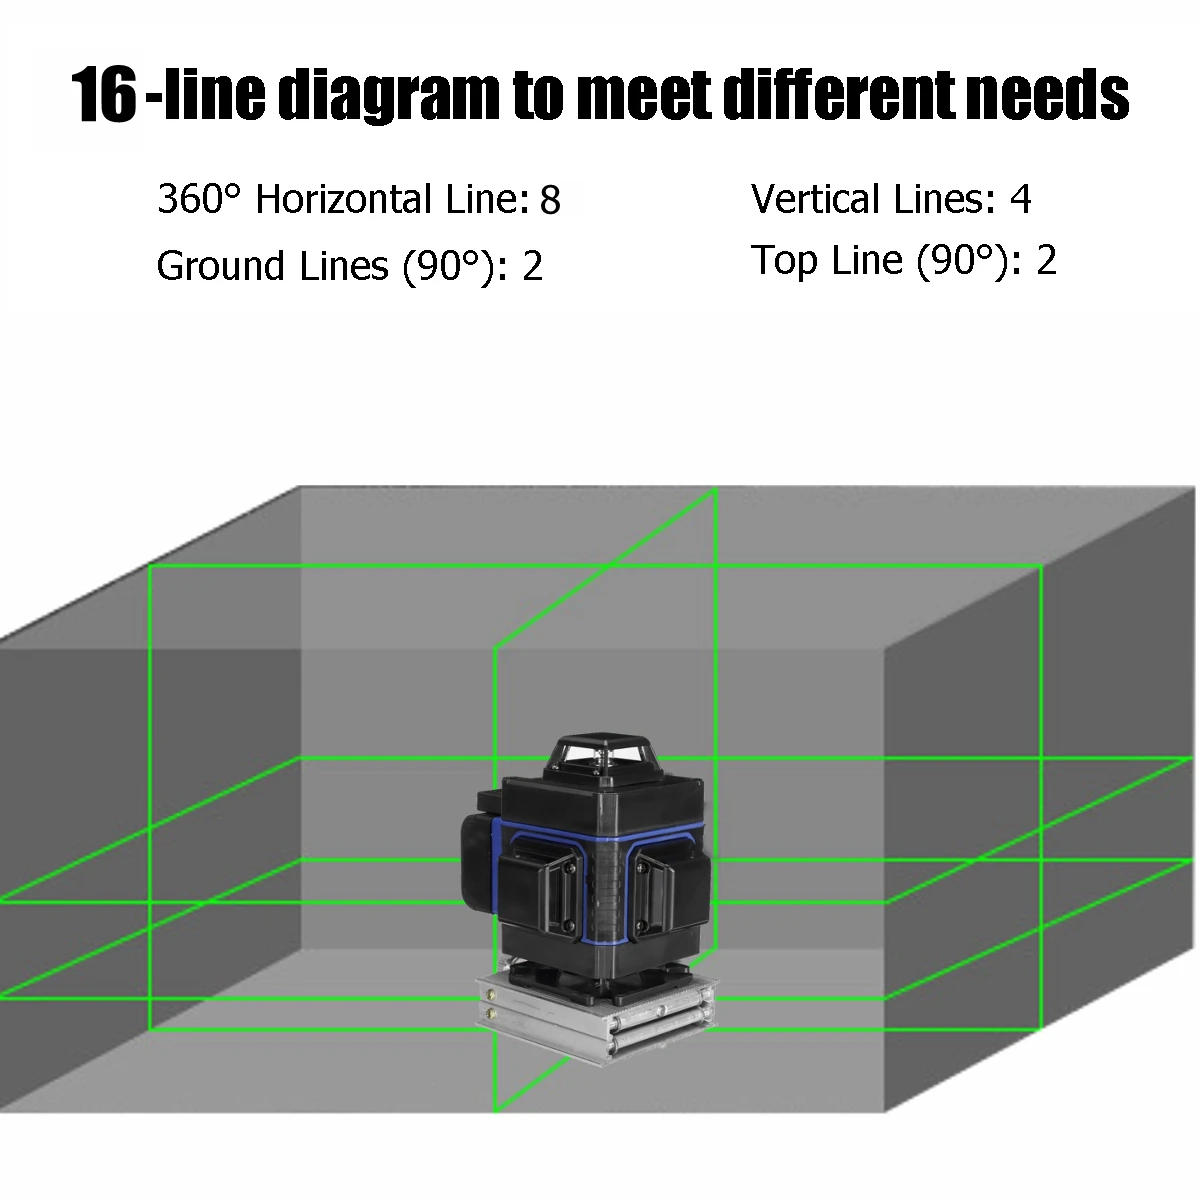 Billige Laser Level 16 Linien 3D Selbst Nivellierung 360 Horizontale Und Vertikale Kreuz Super Leistungsstarke Grün Laser Strahl Linie